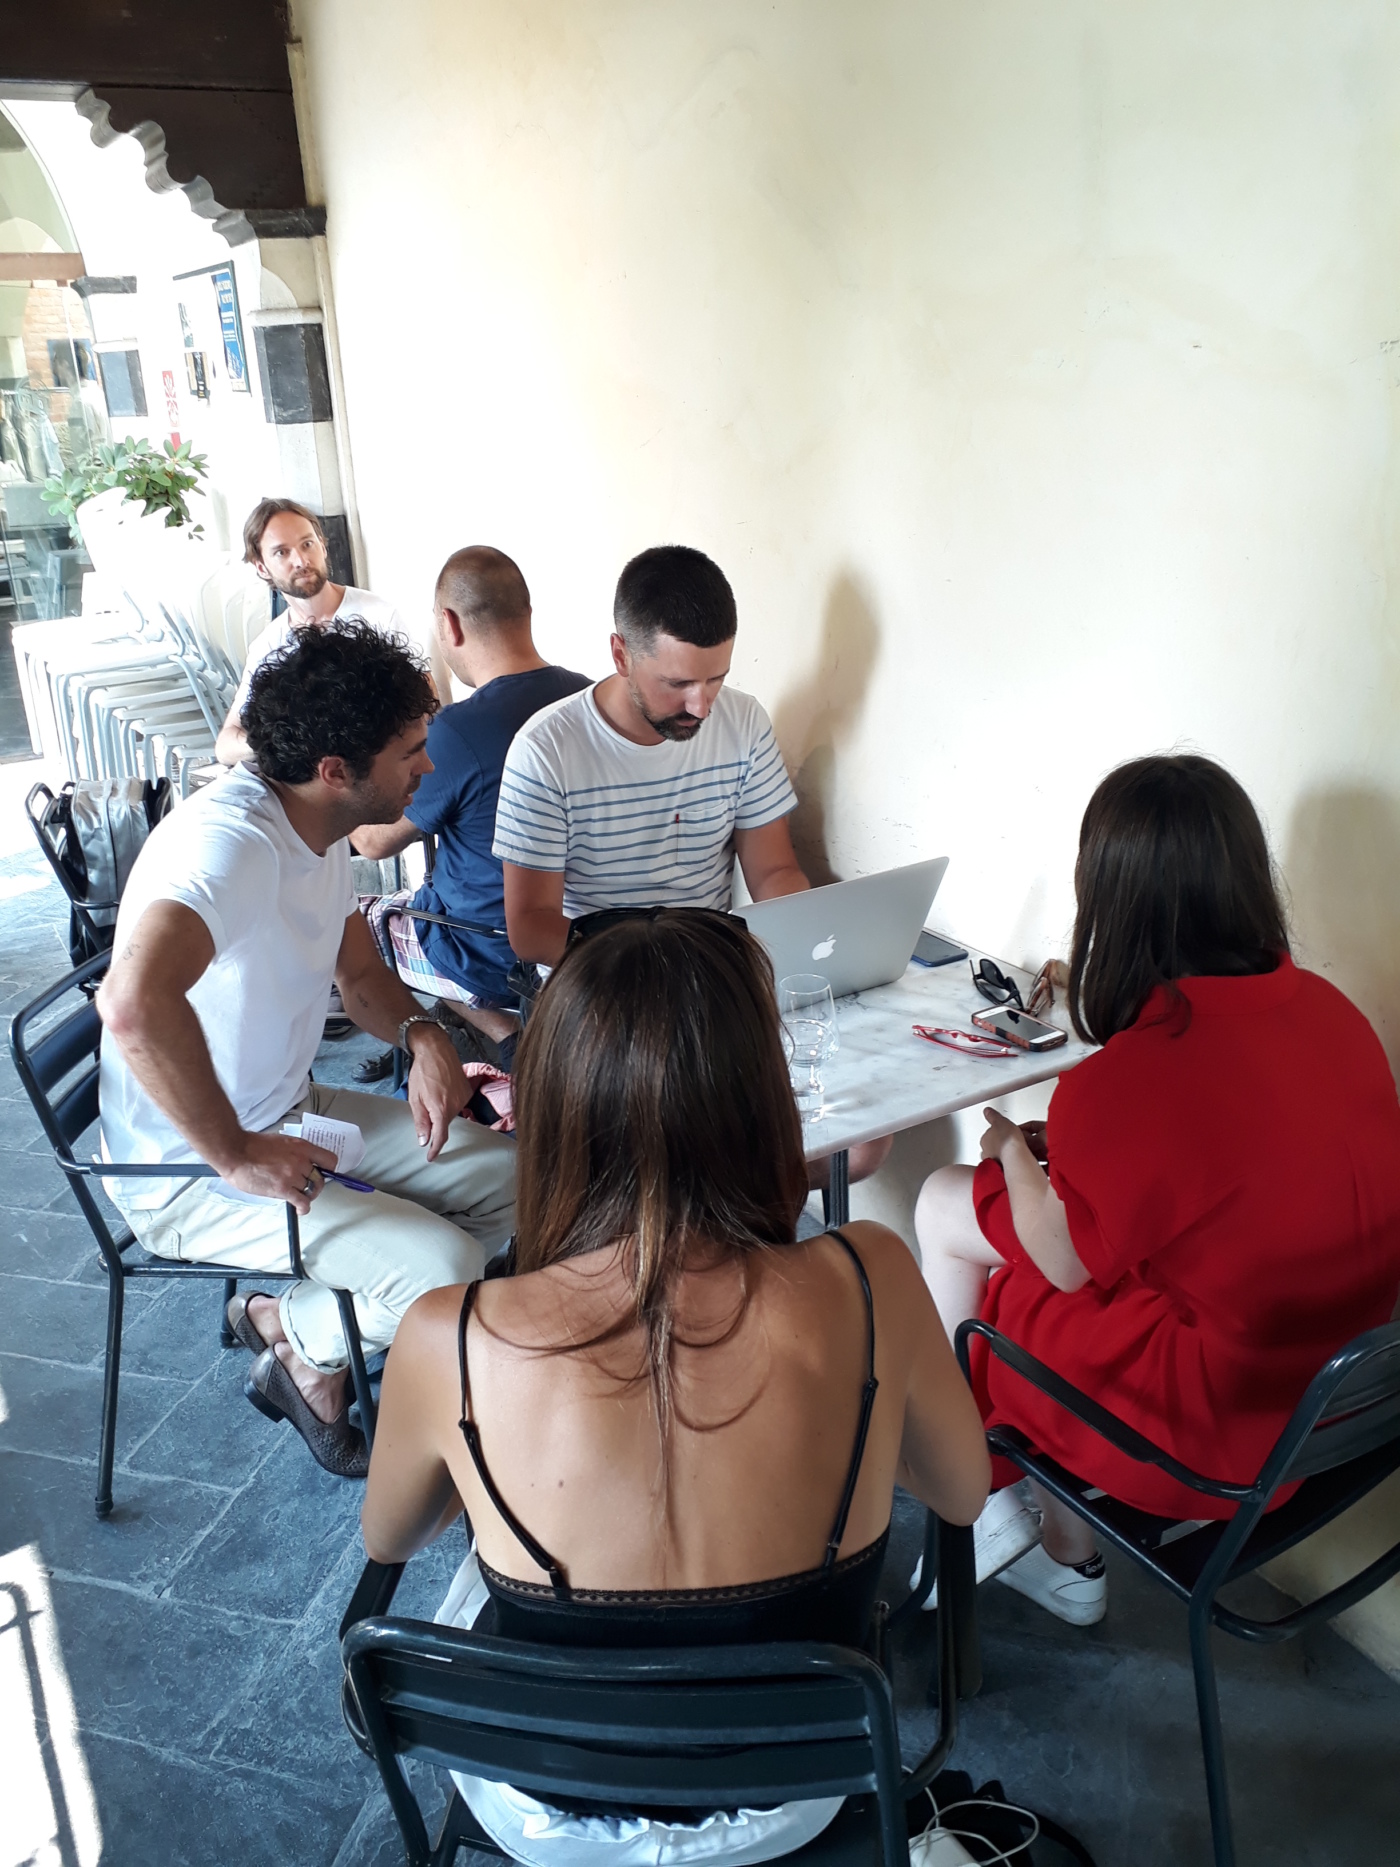 Collaborative Lab #2 in Genoa, Italy